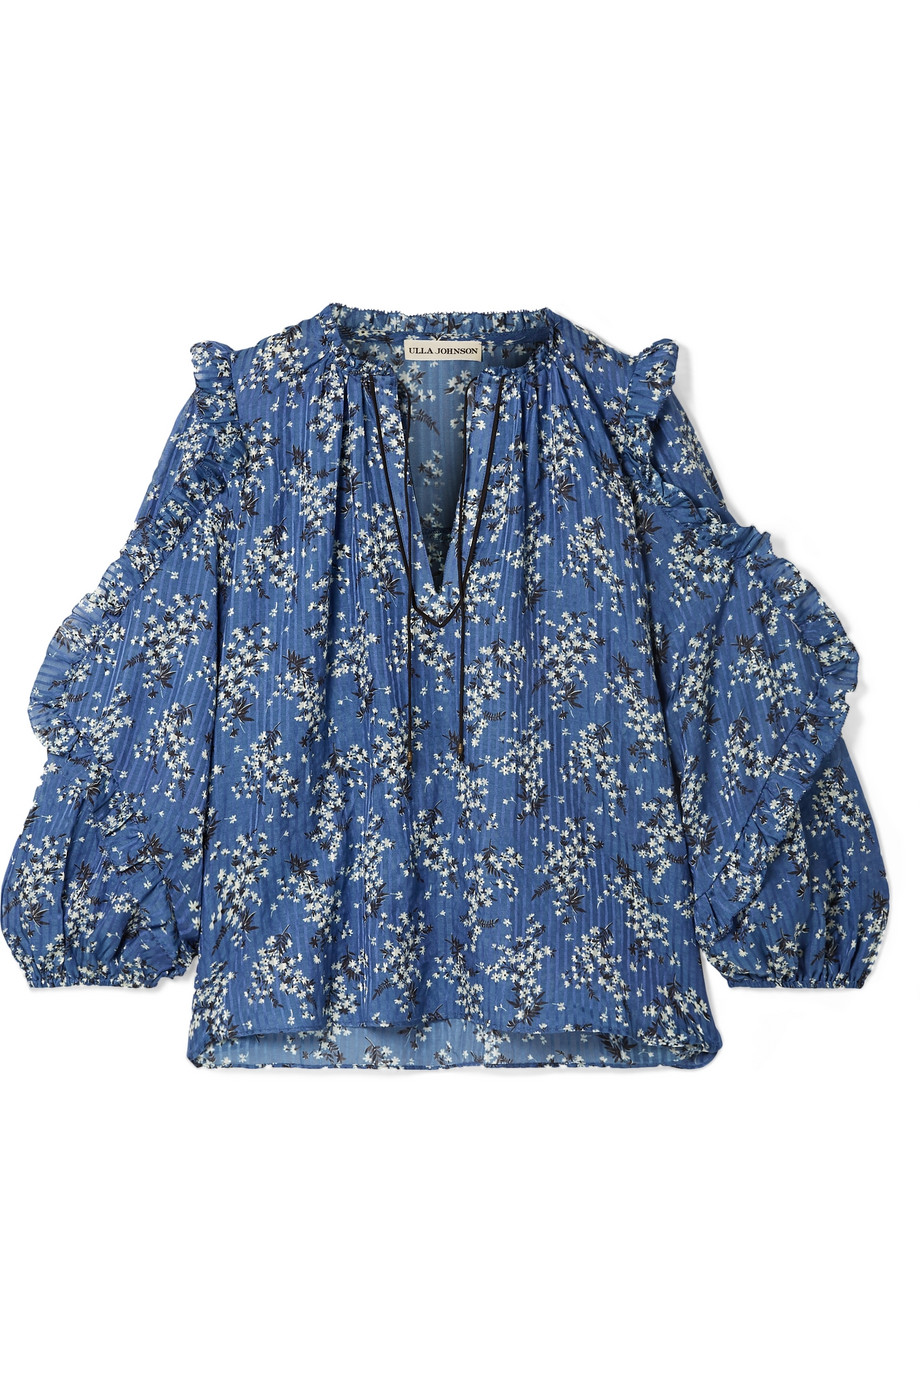 Блузка шелковая Ulla Johnson для женщин